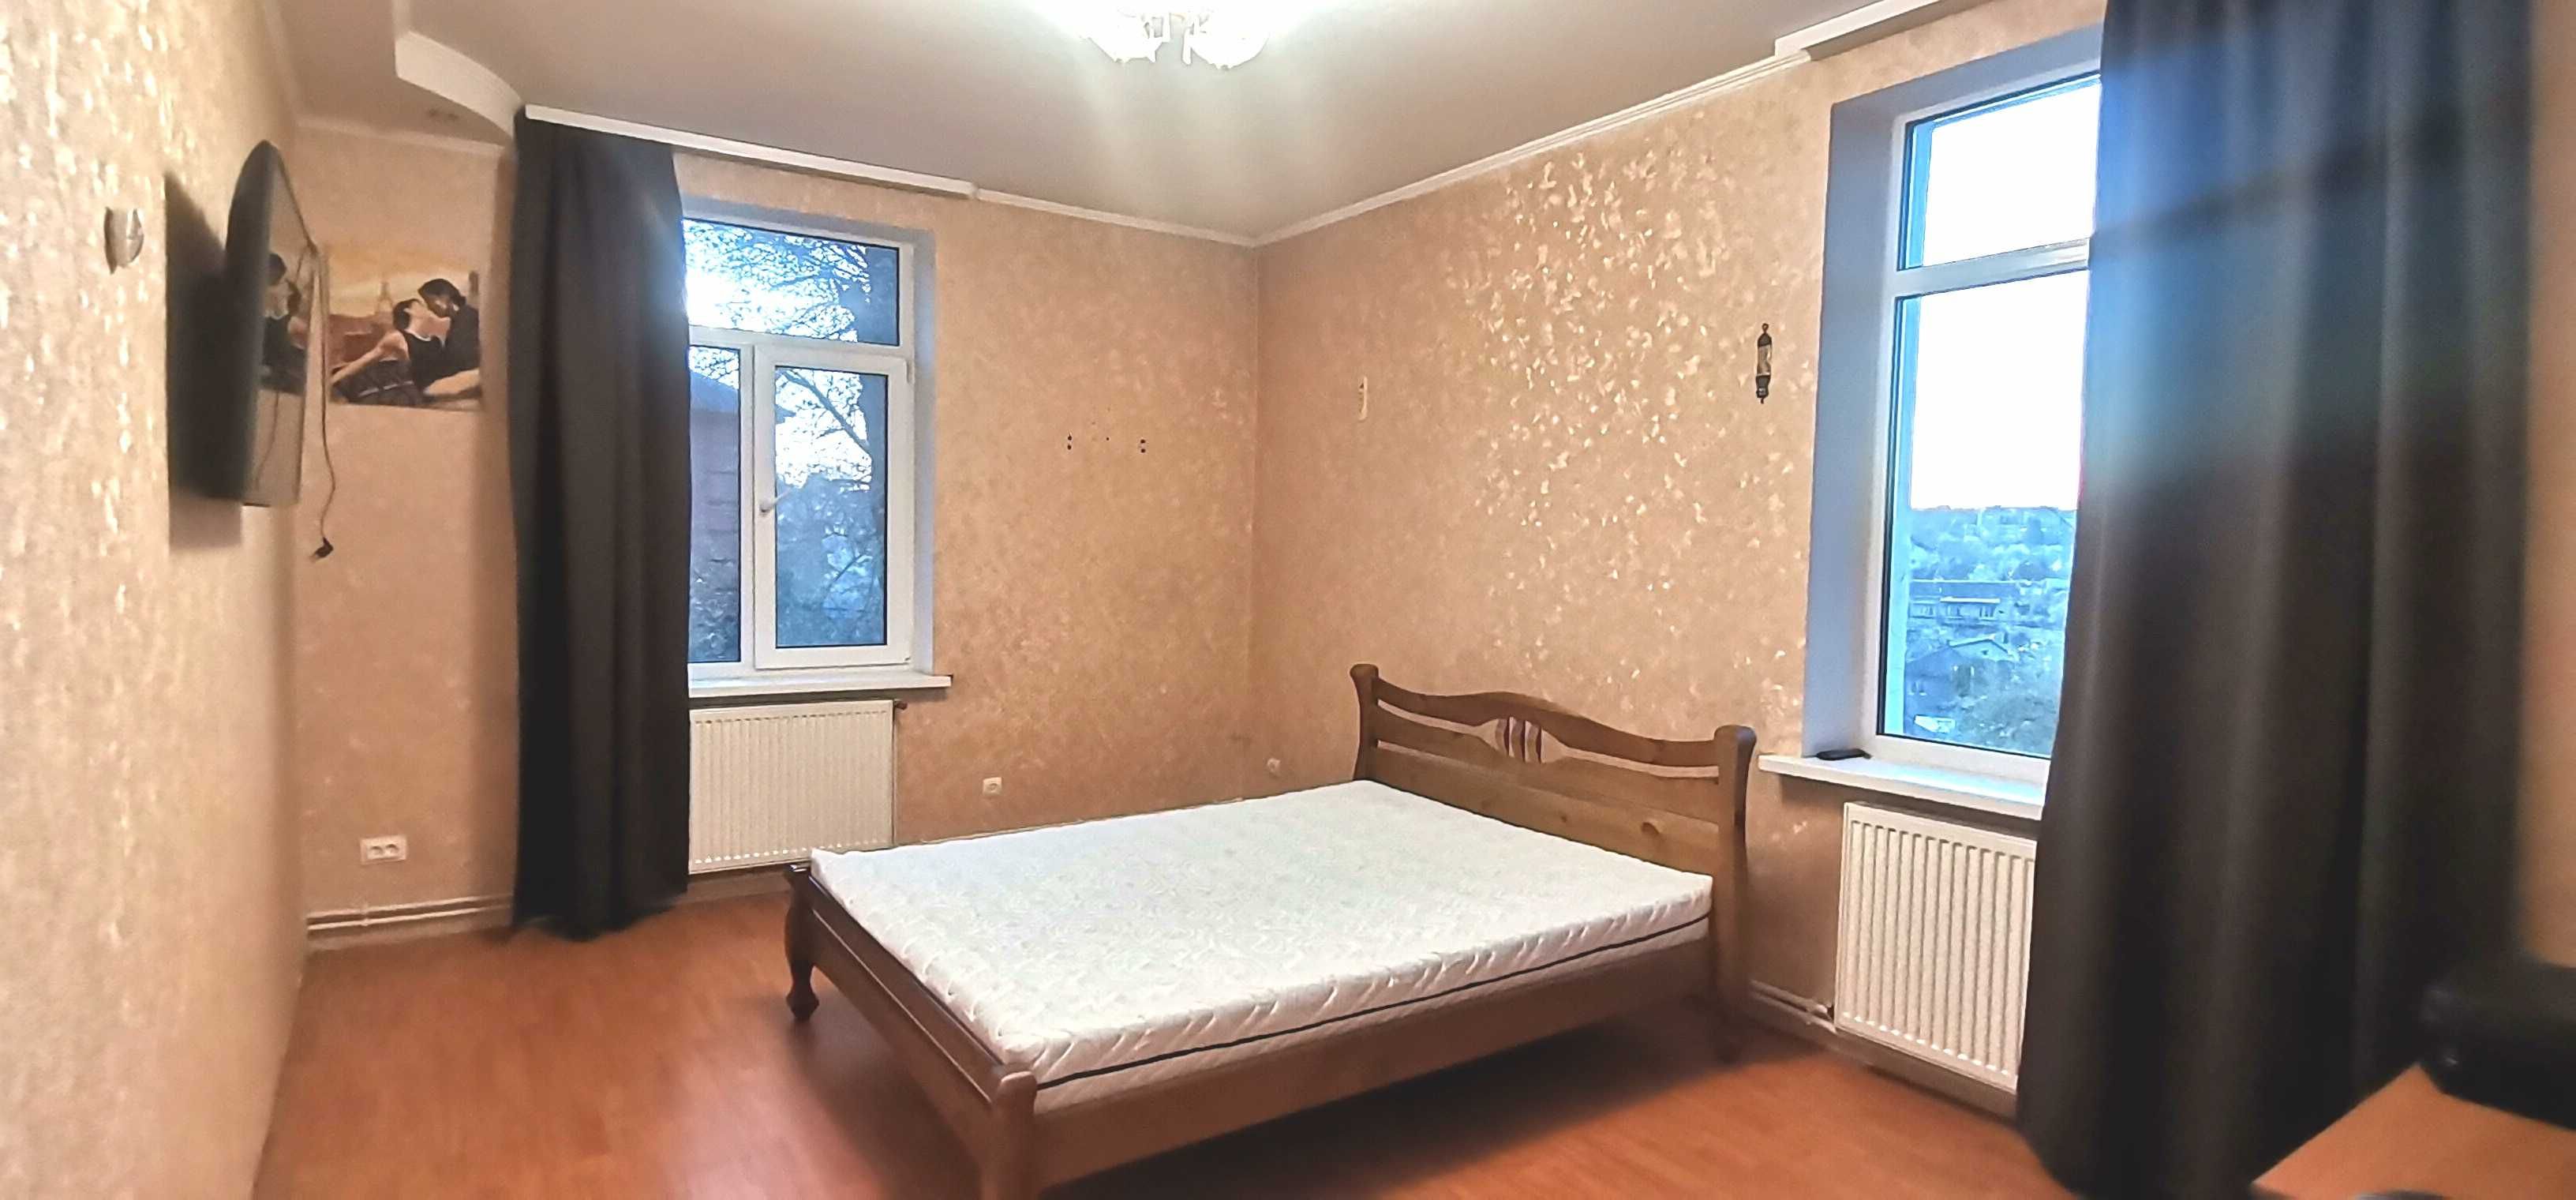 Продам двокімнатну квартиру в Центрі Вінниці, АГВ